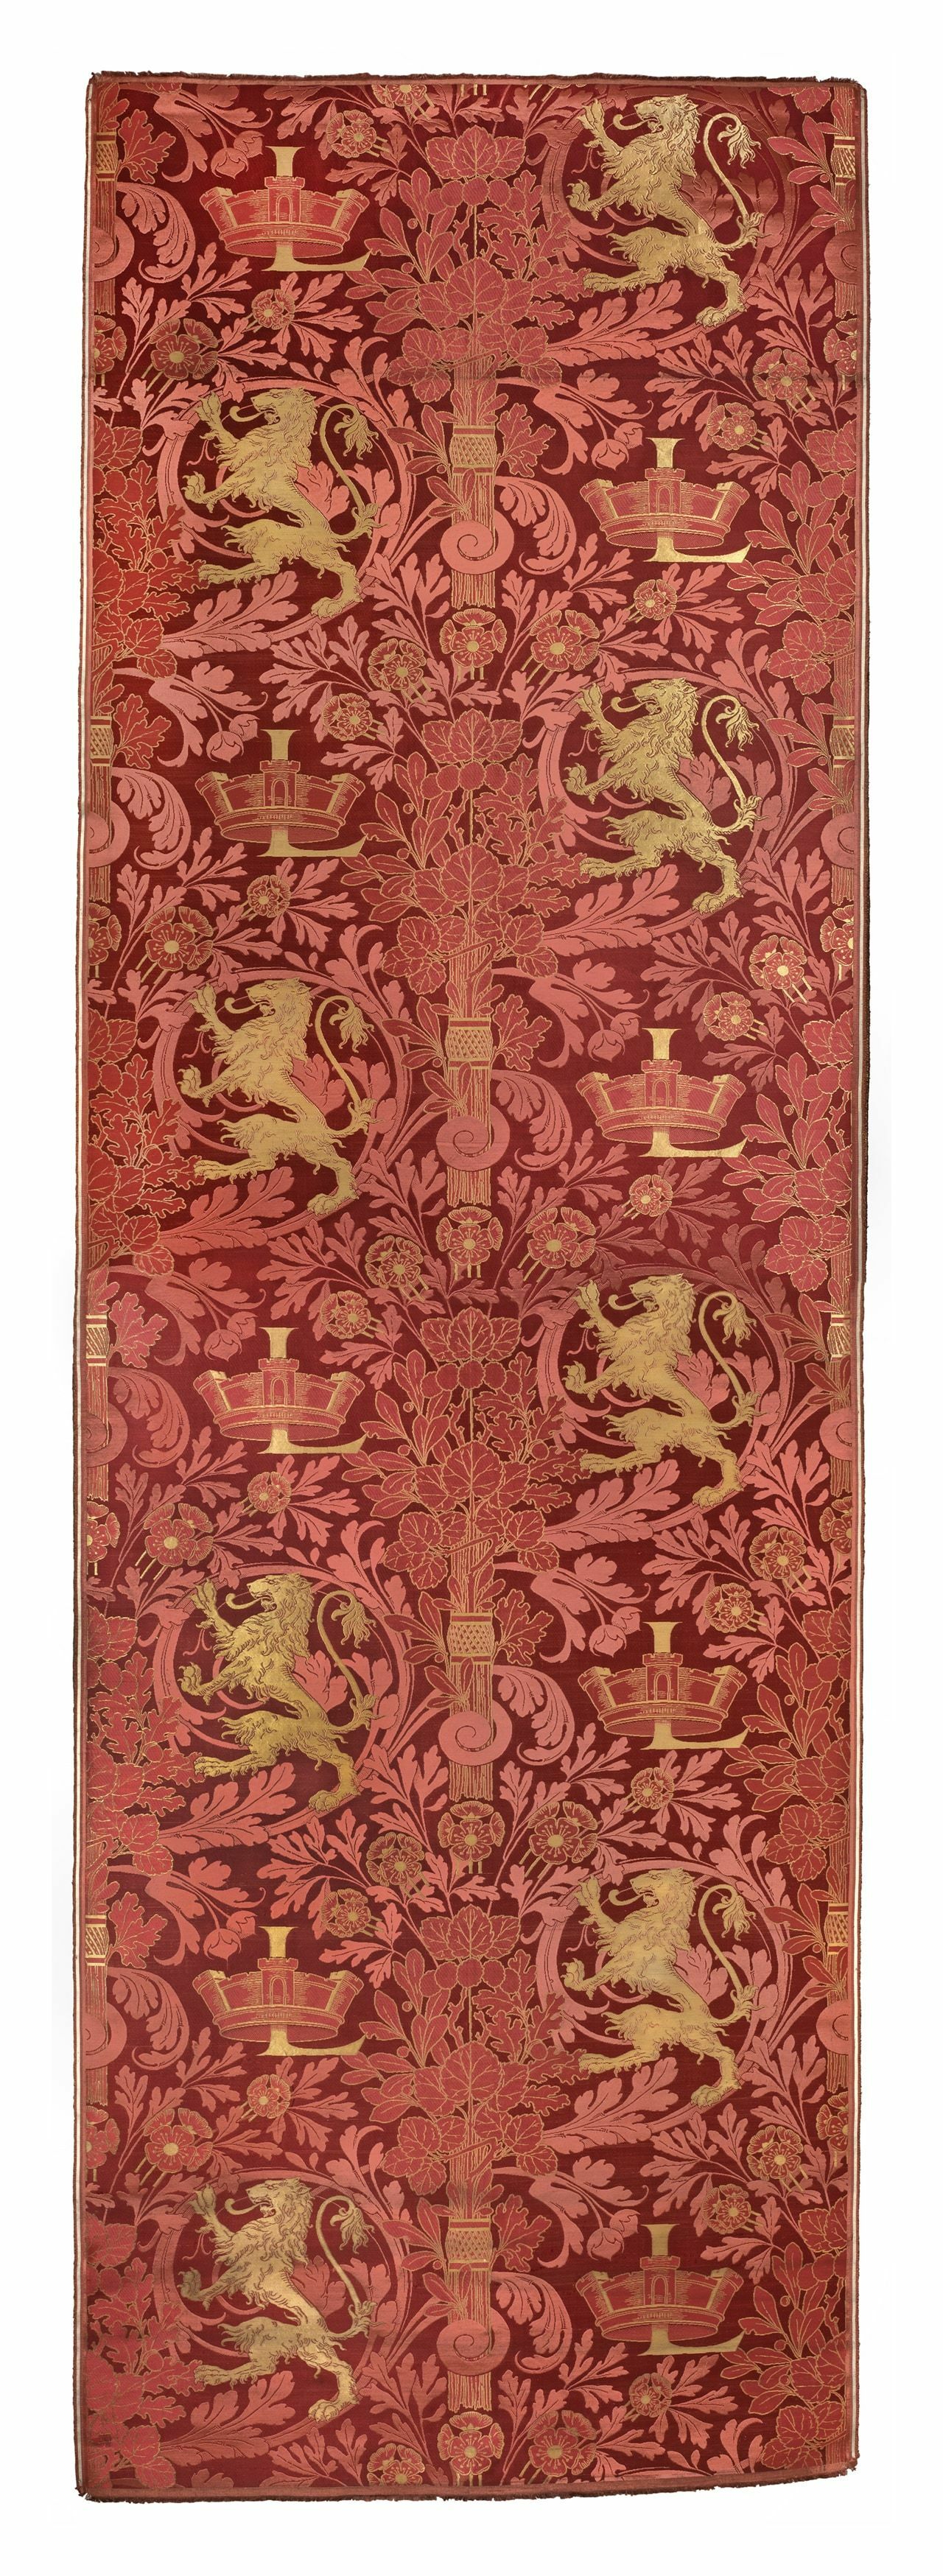 Joseph-Alphonse Henry, Claudius Ducrot, Brocart rouge et or aux armes de la ville de Lyon, Lyon, 1899.